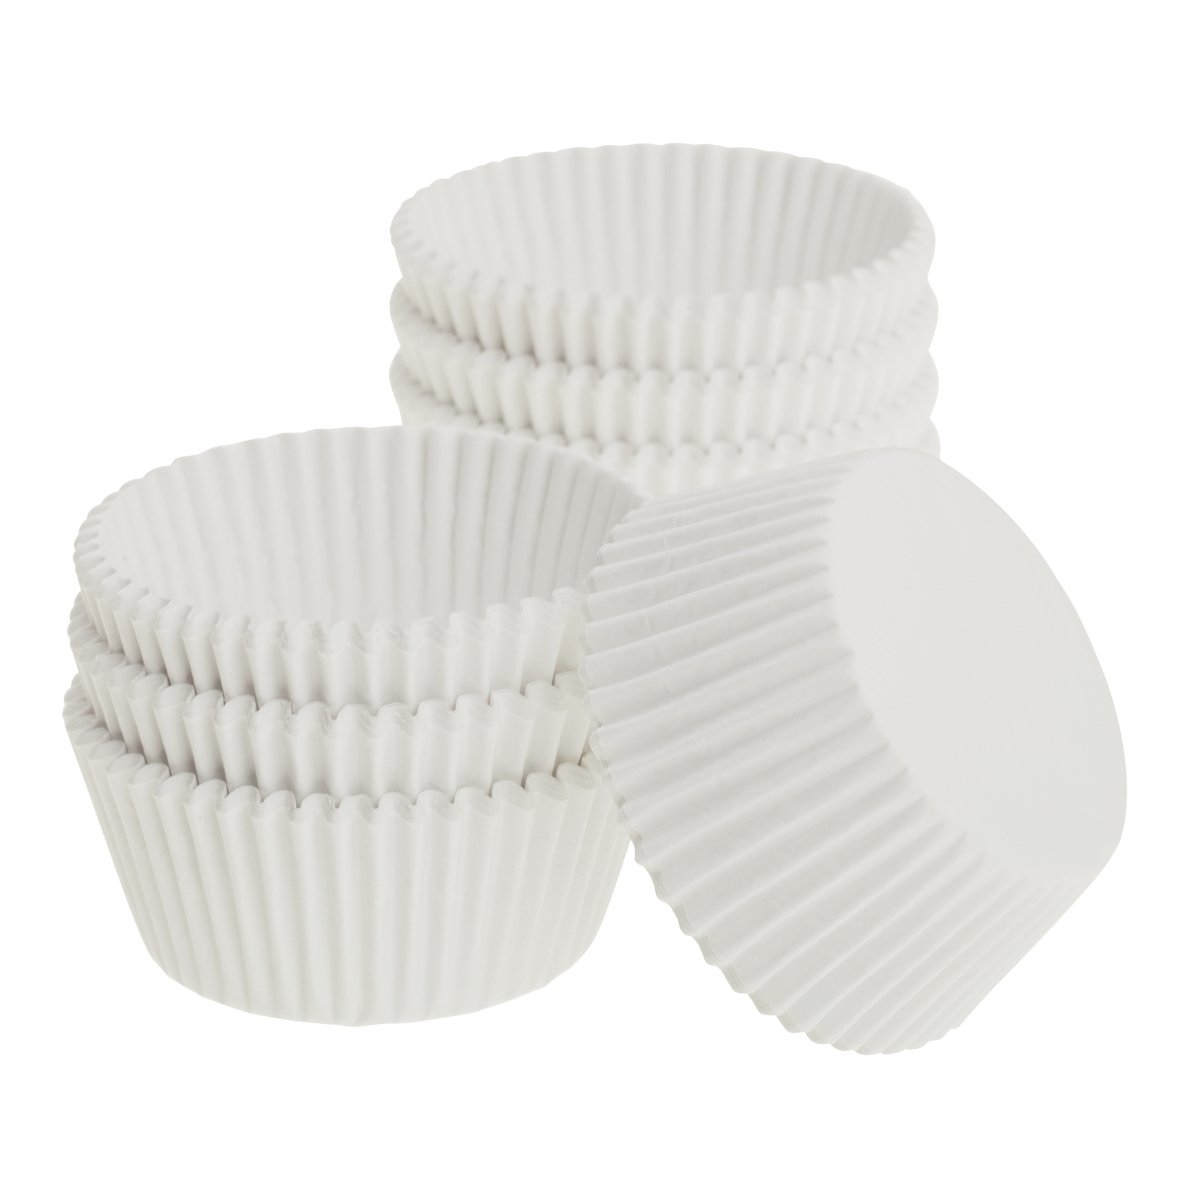 Mini White Baking Cup 200pk. Ateco Cupcake Liner - Bake Supply Plus